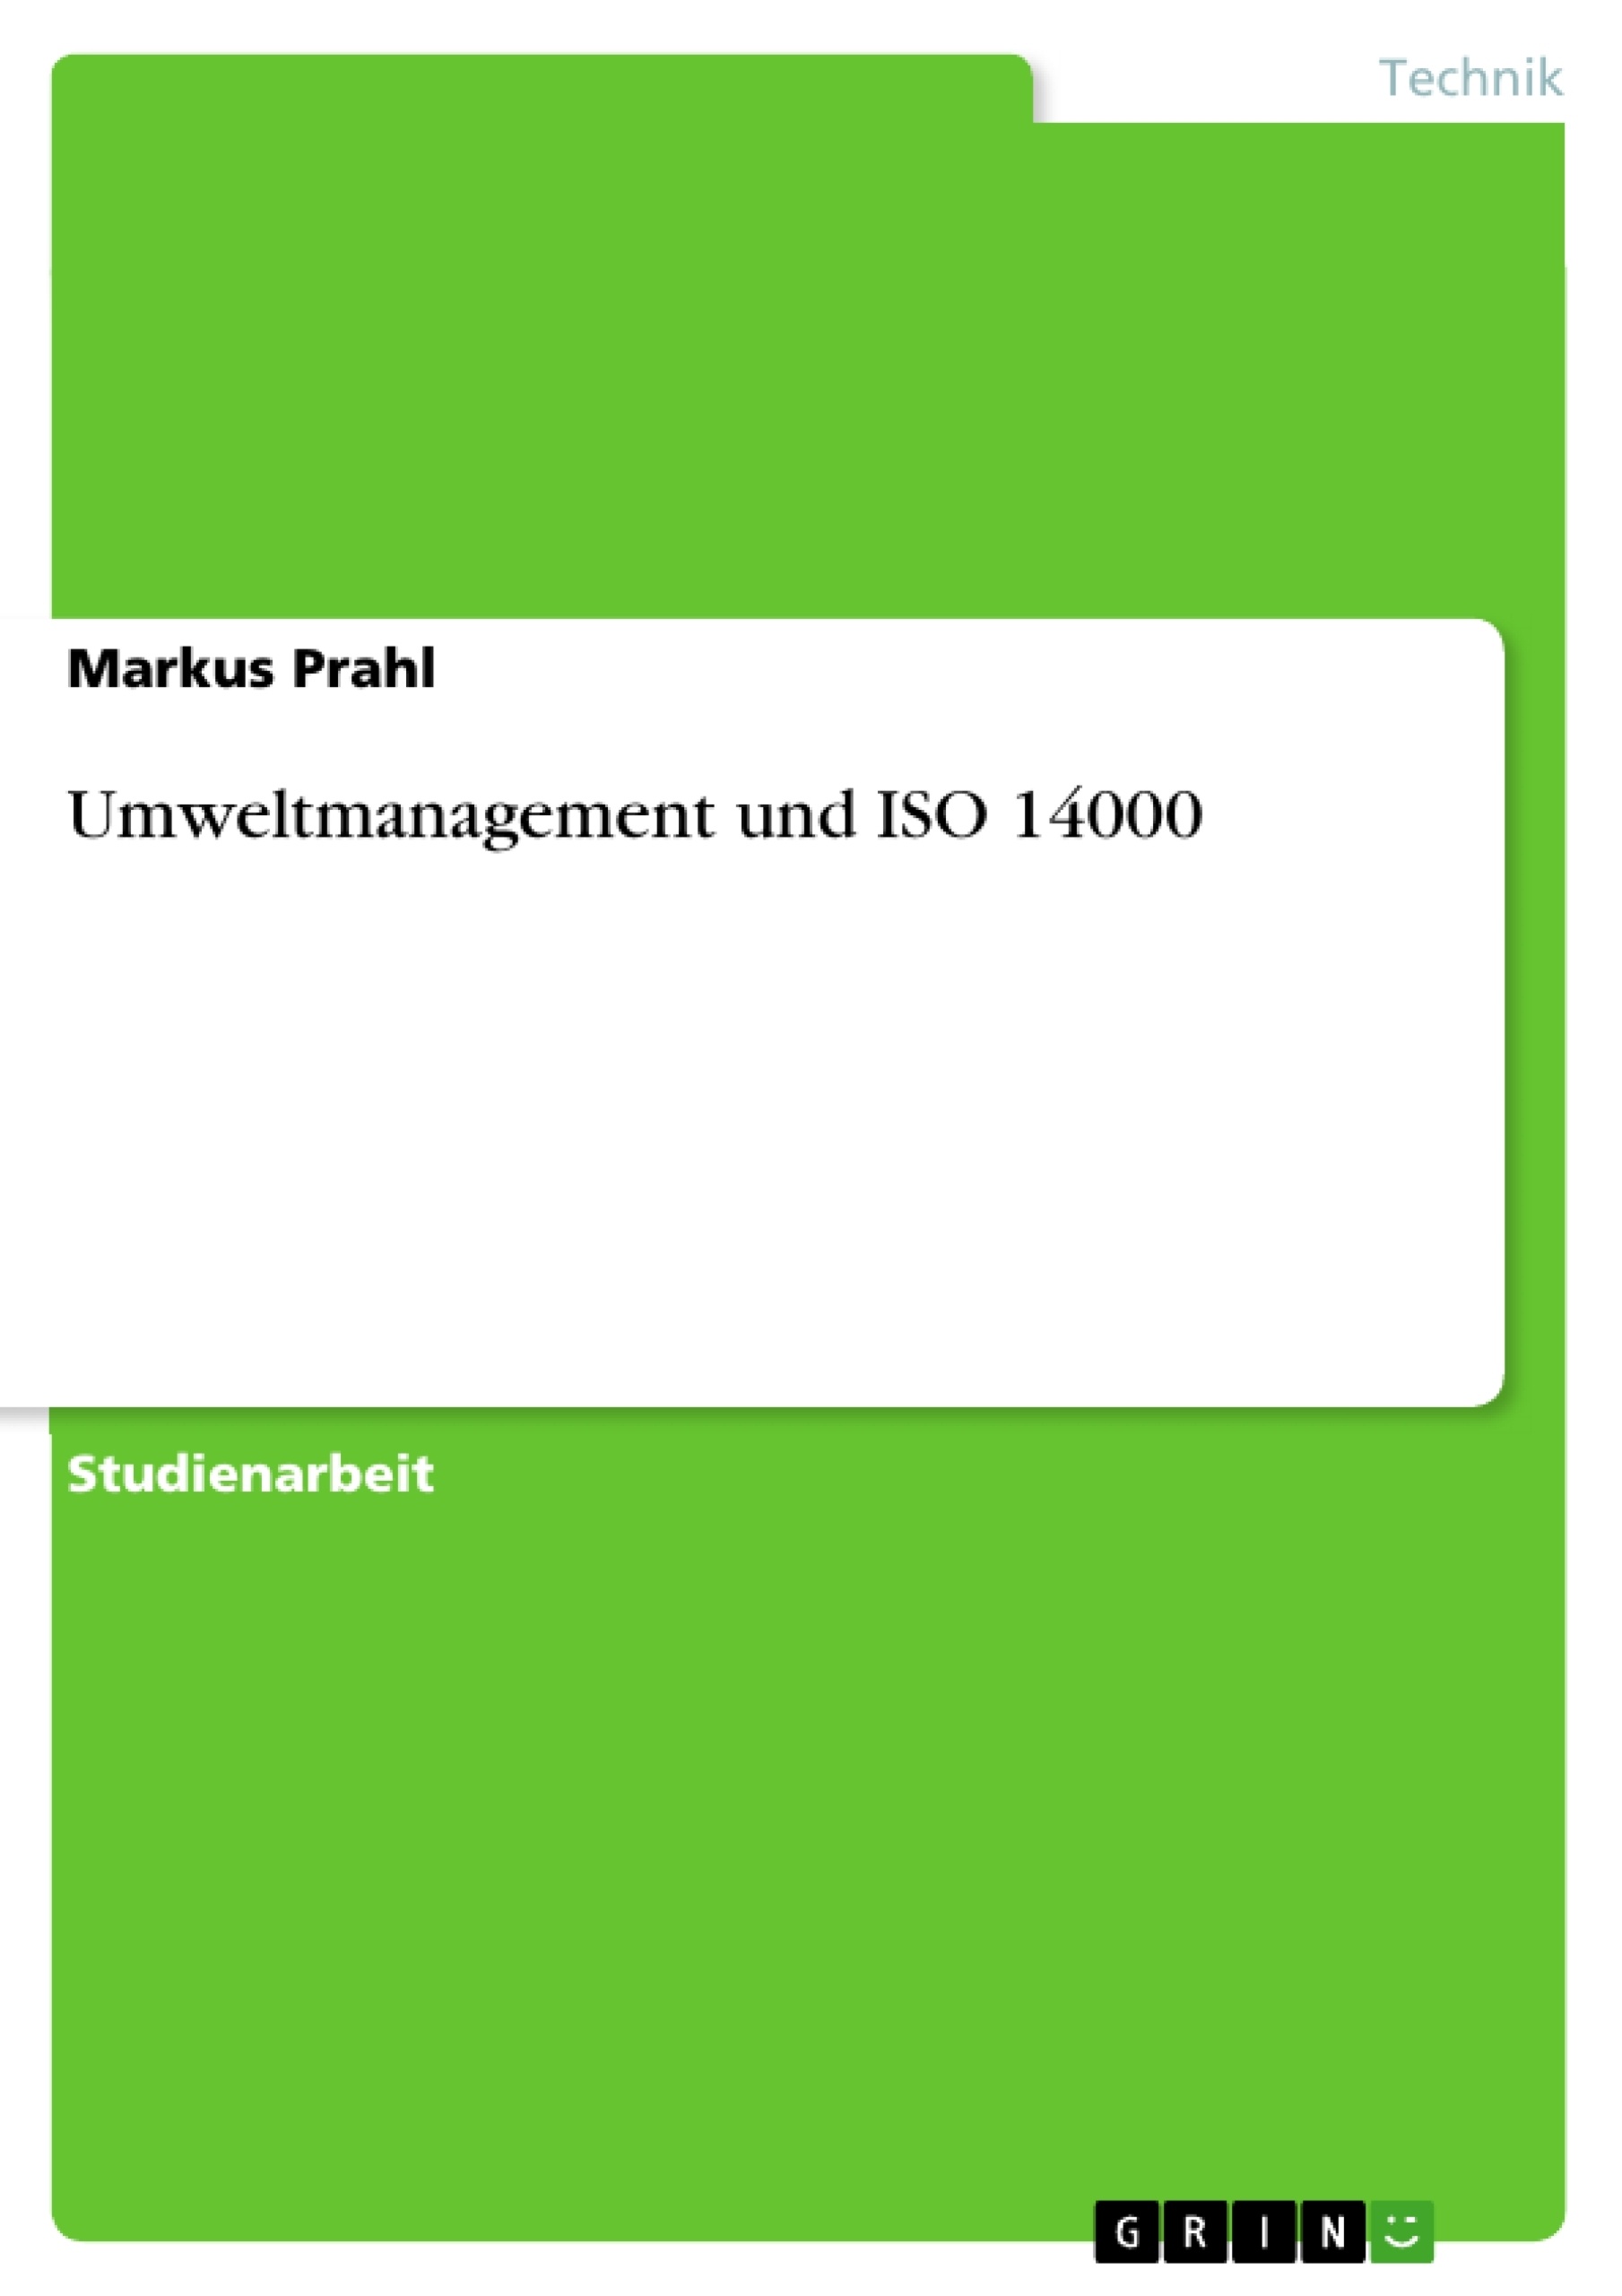 Titel: Umweltmanagement und ISO 14000